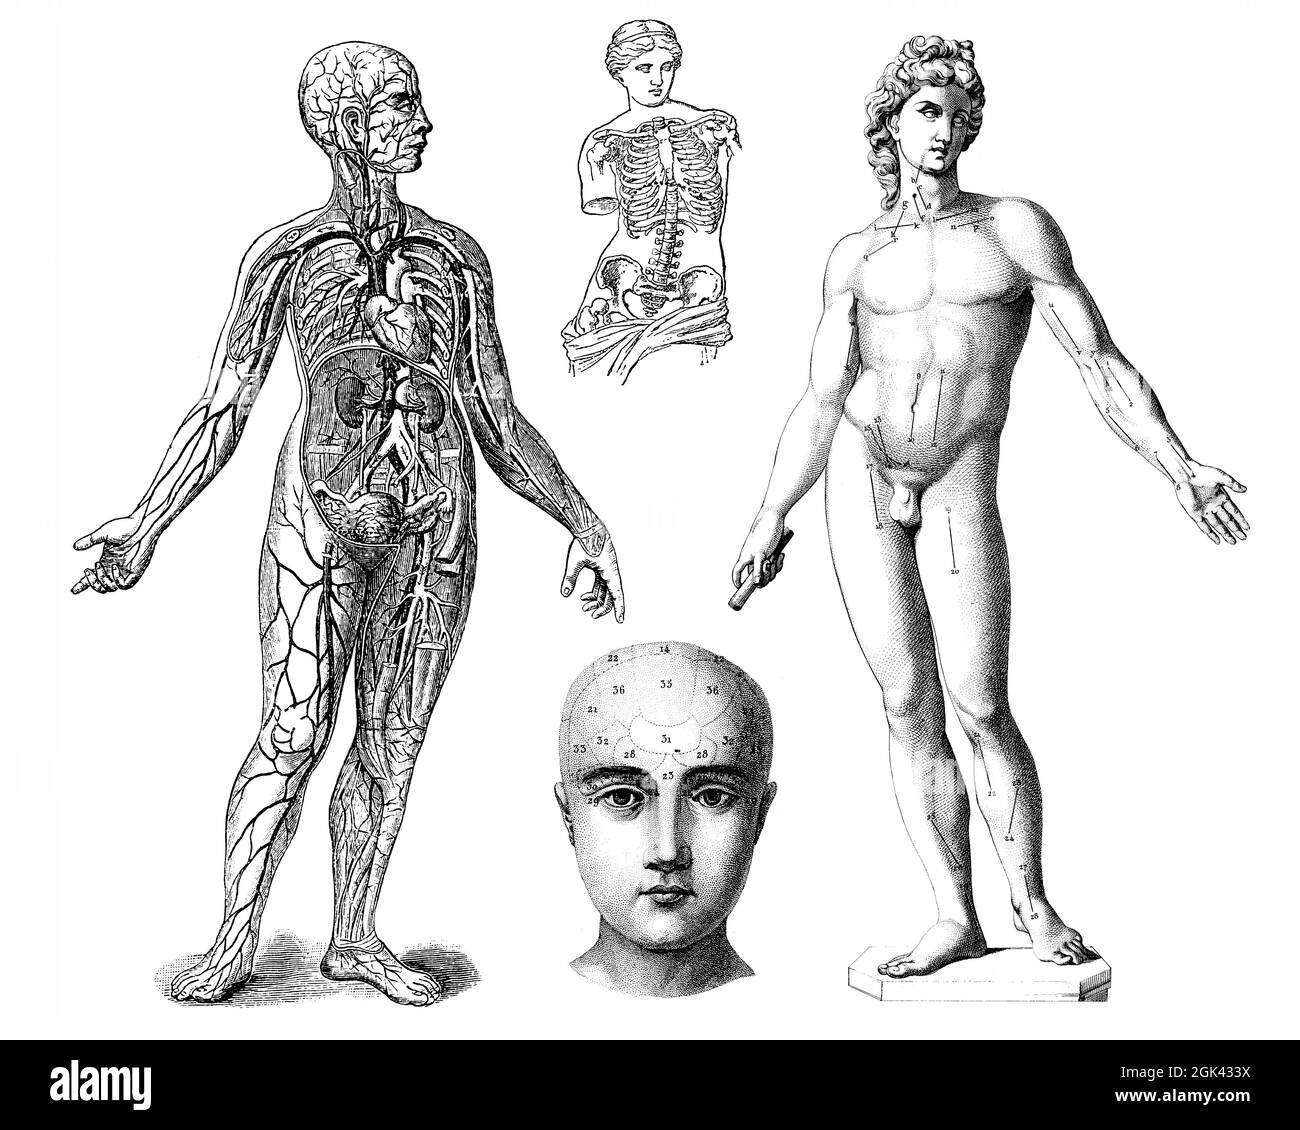 Médical - illustrations anatomiques victoriennes - isolé sur un fond blanc pour découpe. Banque D'Images